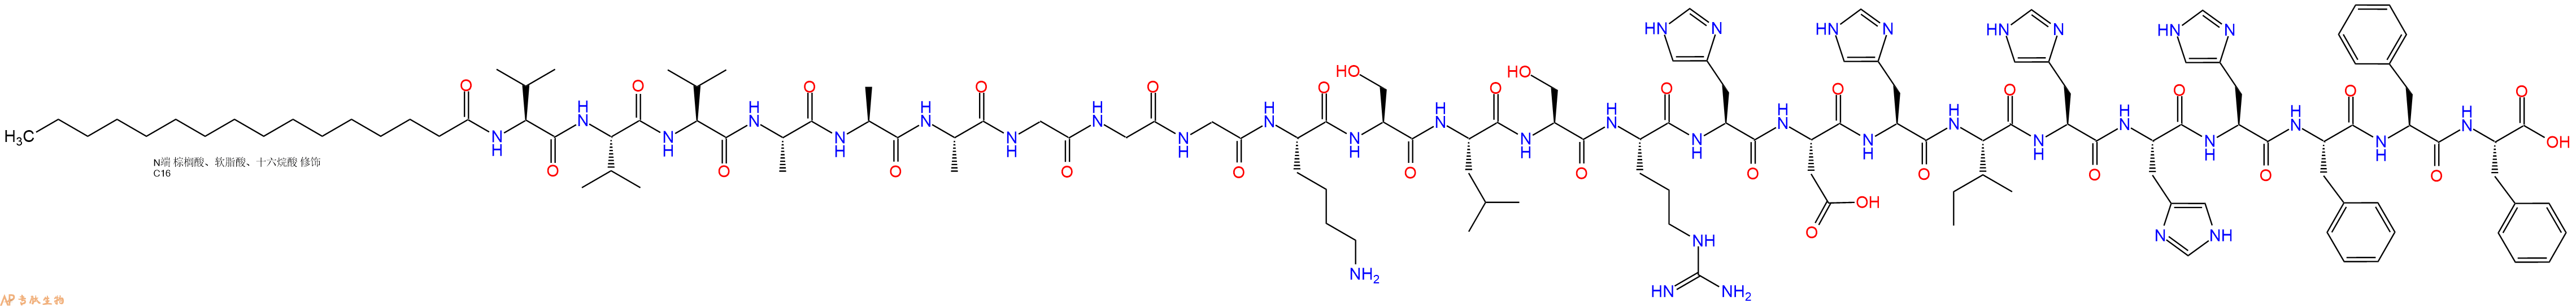 专肽生物产品棕榈酸-VVVAAAGGGKSLSRHDHIHHHFFF